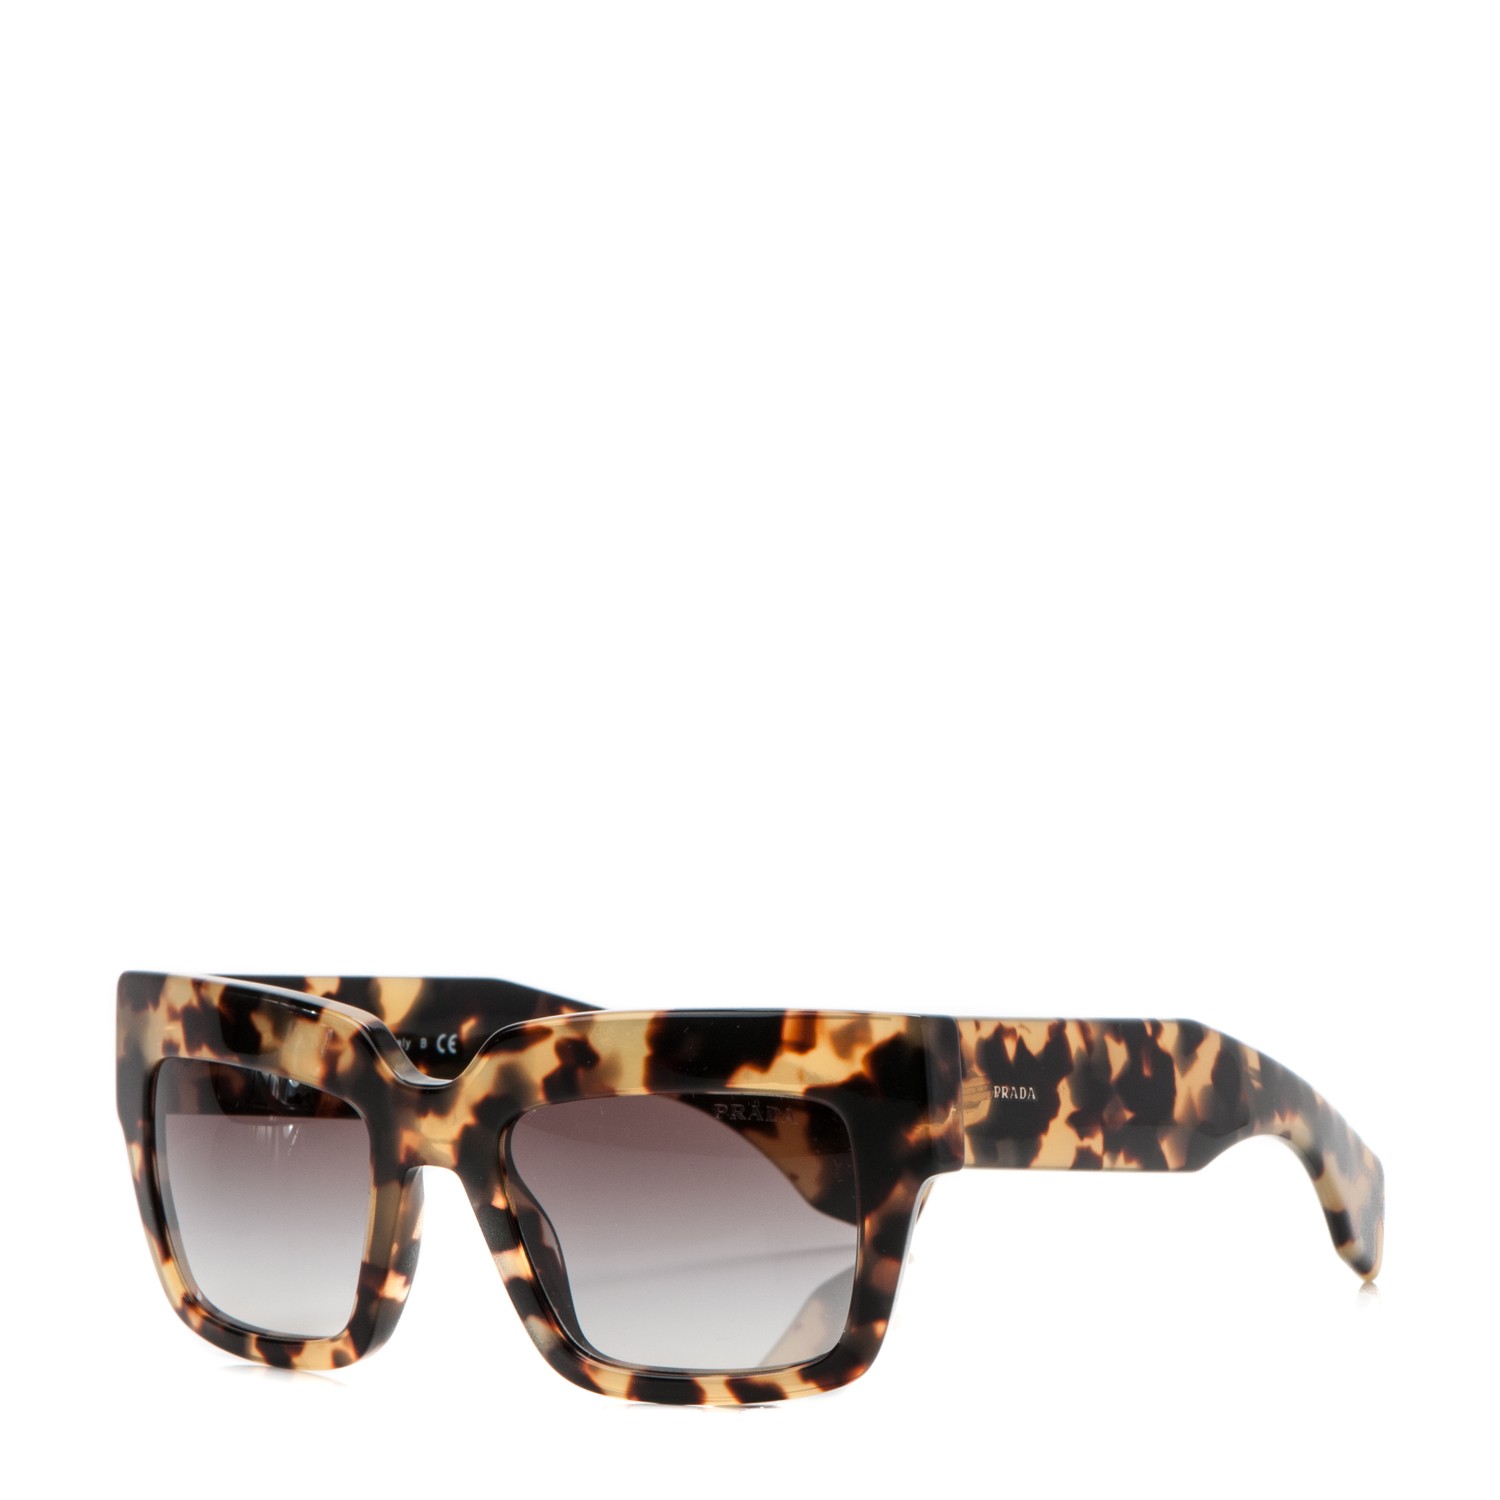 prada sunglasses wayfarer style